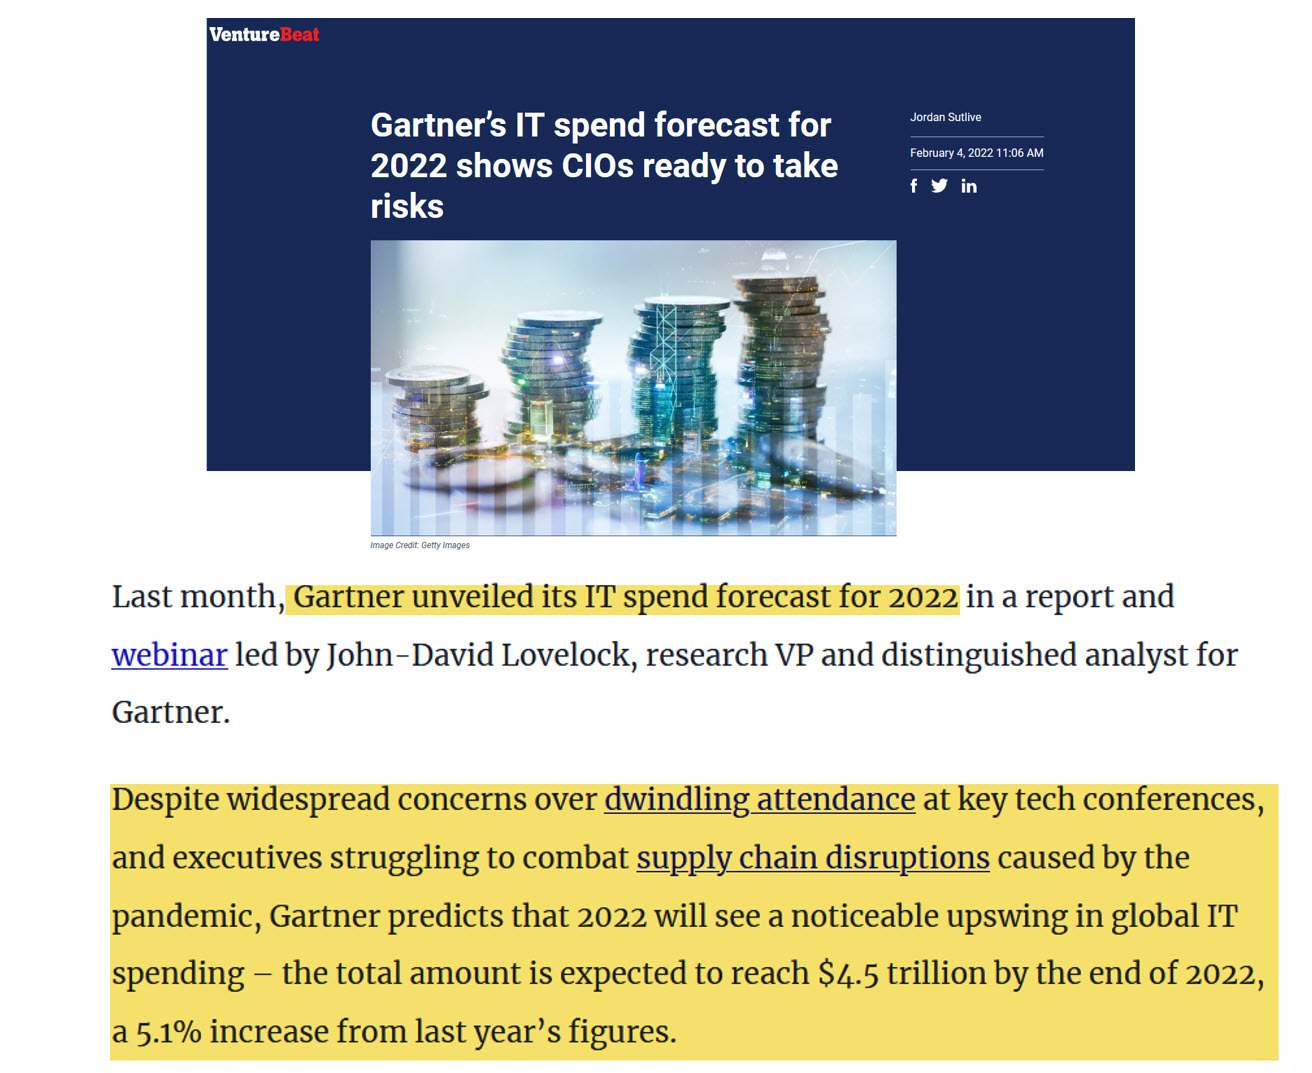 Gartner's IT spend forecast for 2022